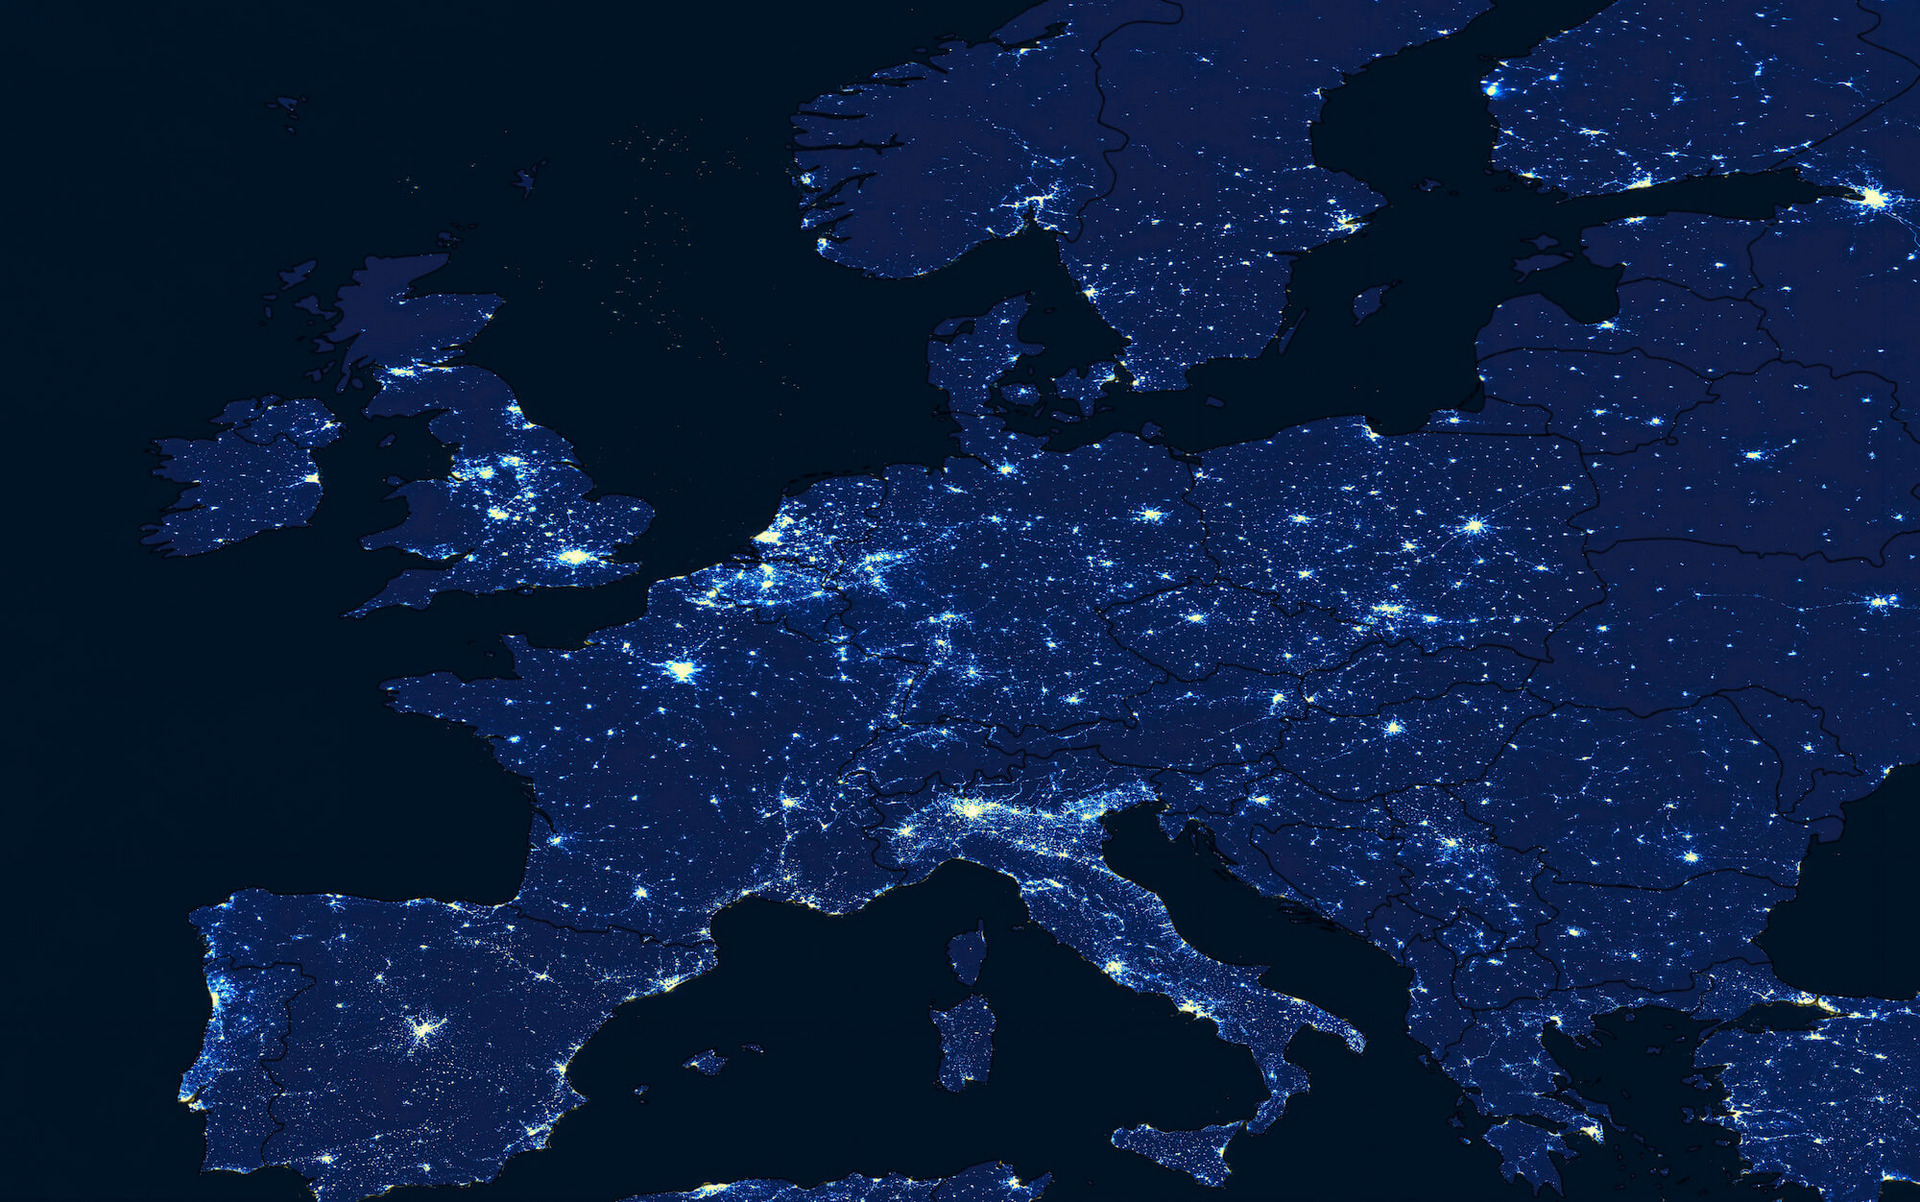 Europa aus dem All bei Nacht betrachtet, mit leuchtenden Ballungszentren